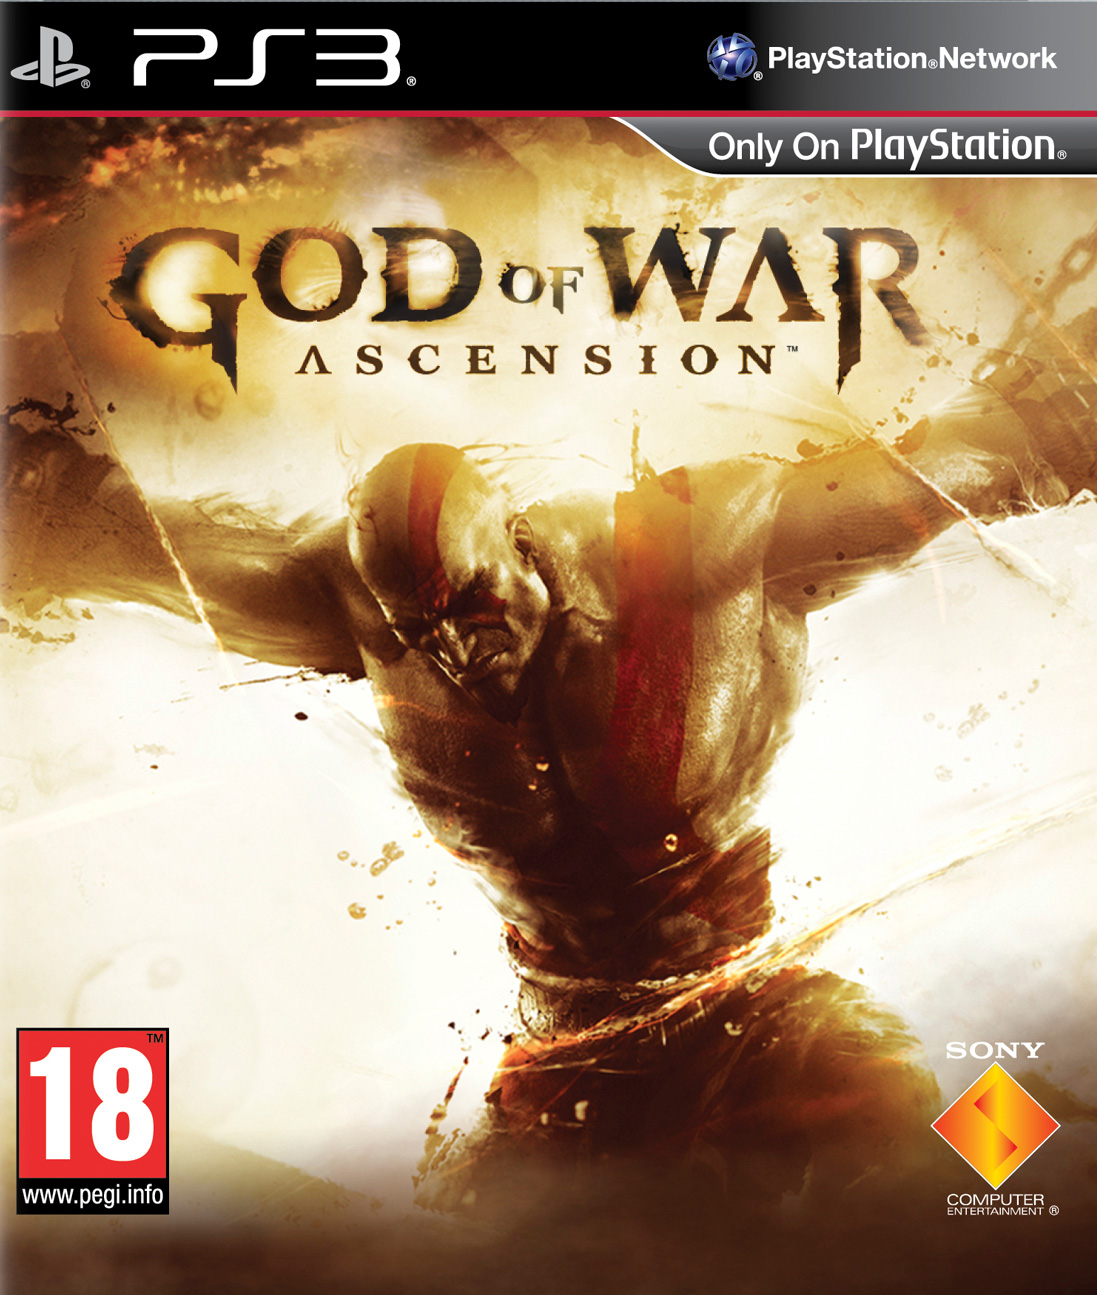 god of war ascension pc crack download